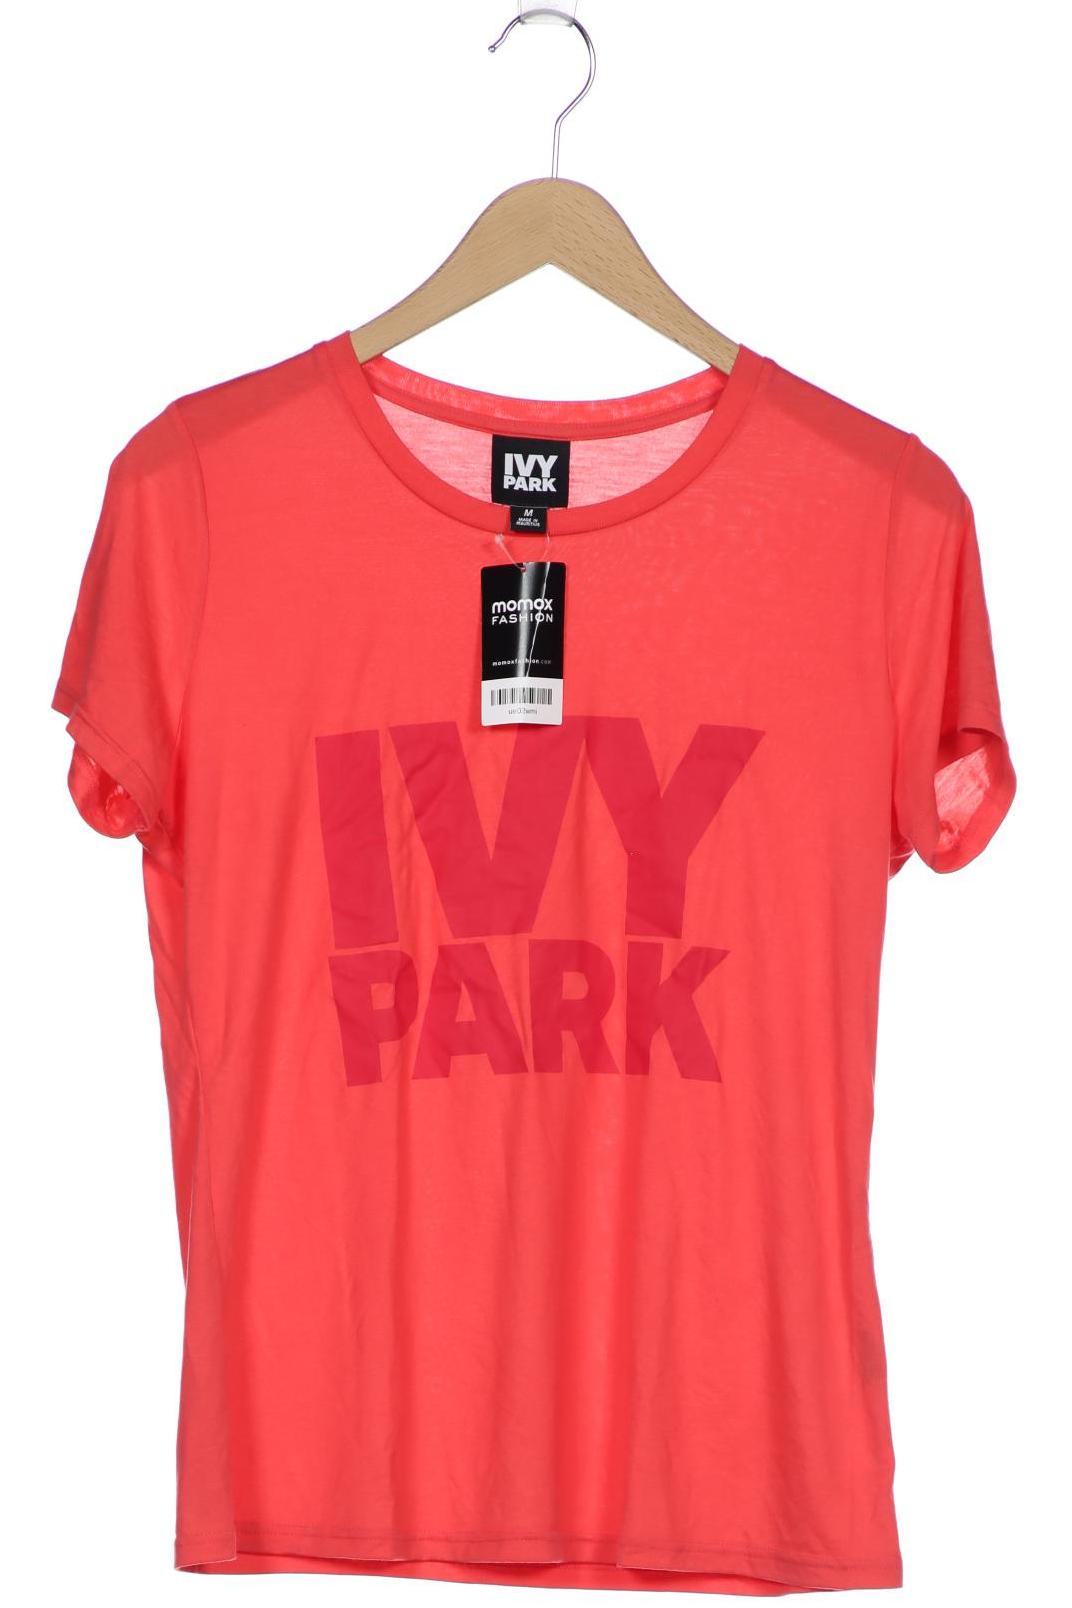 IVY Park Damen T-Shirt, pink, Gr. 38 von Ivy Park